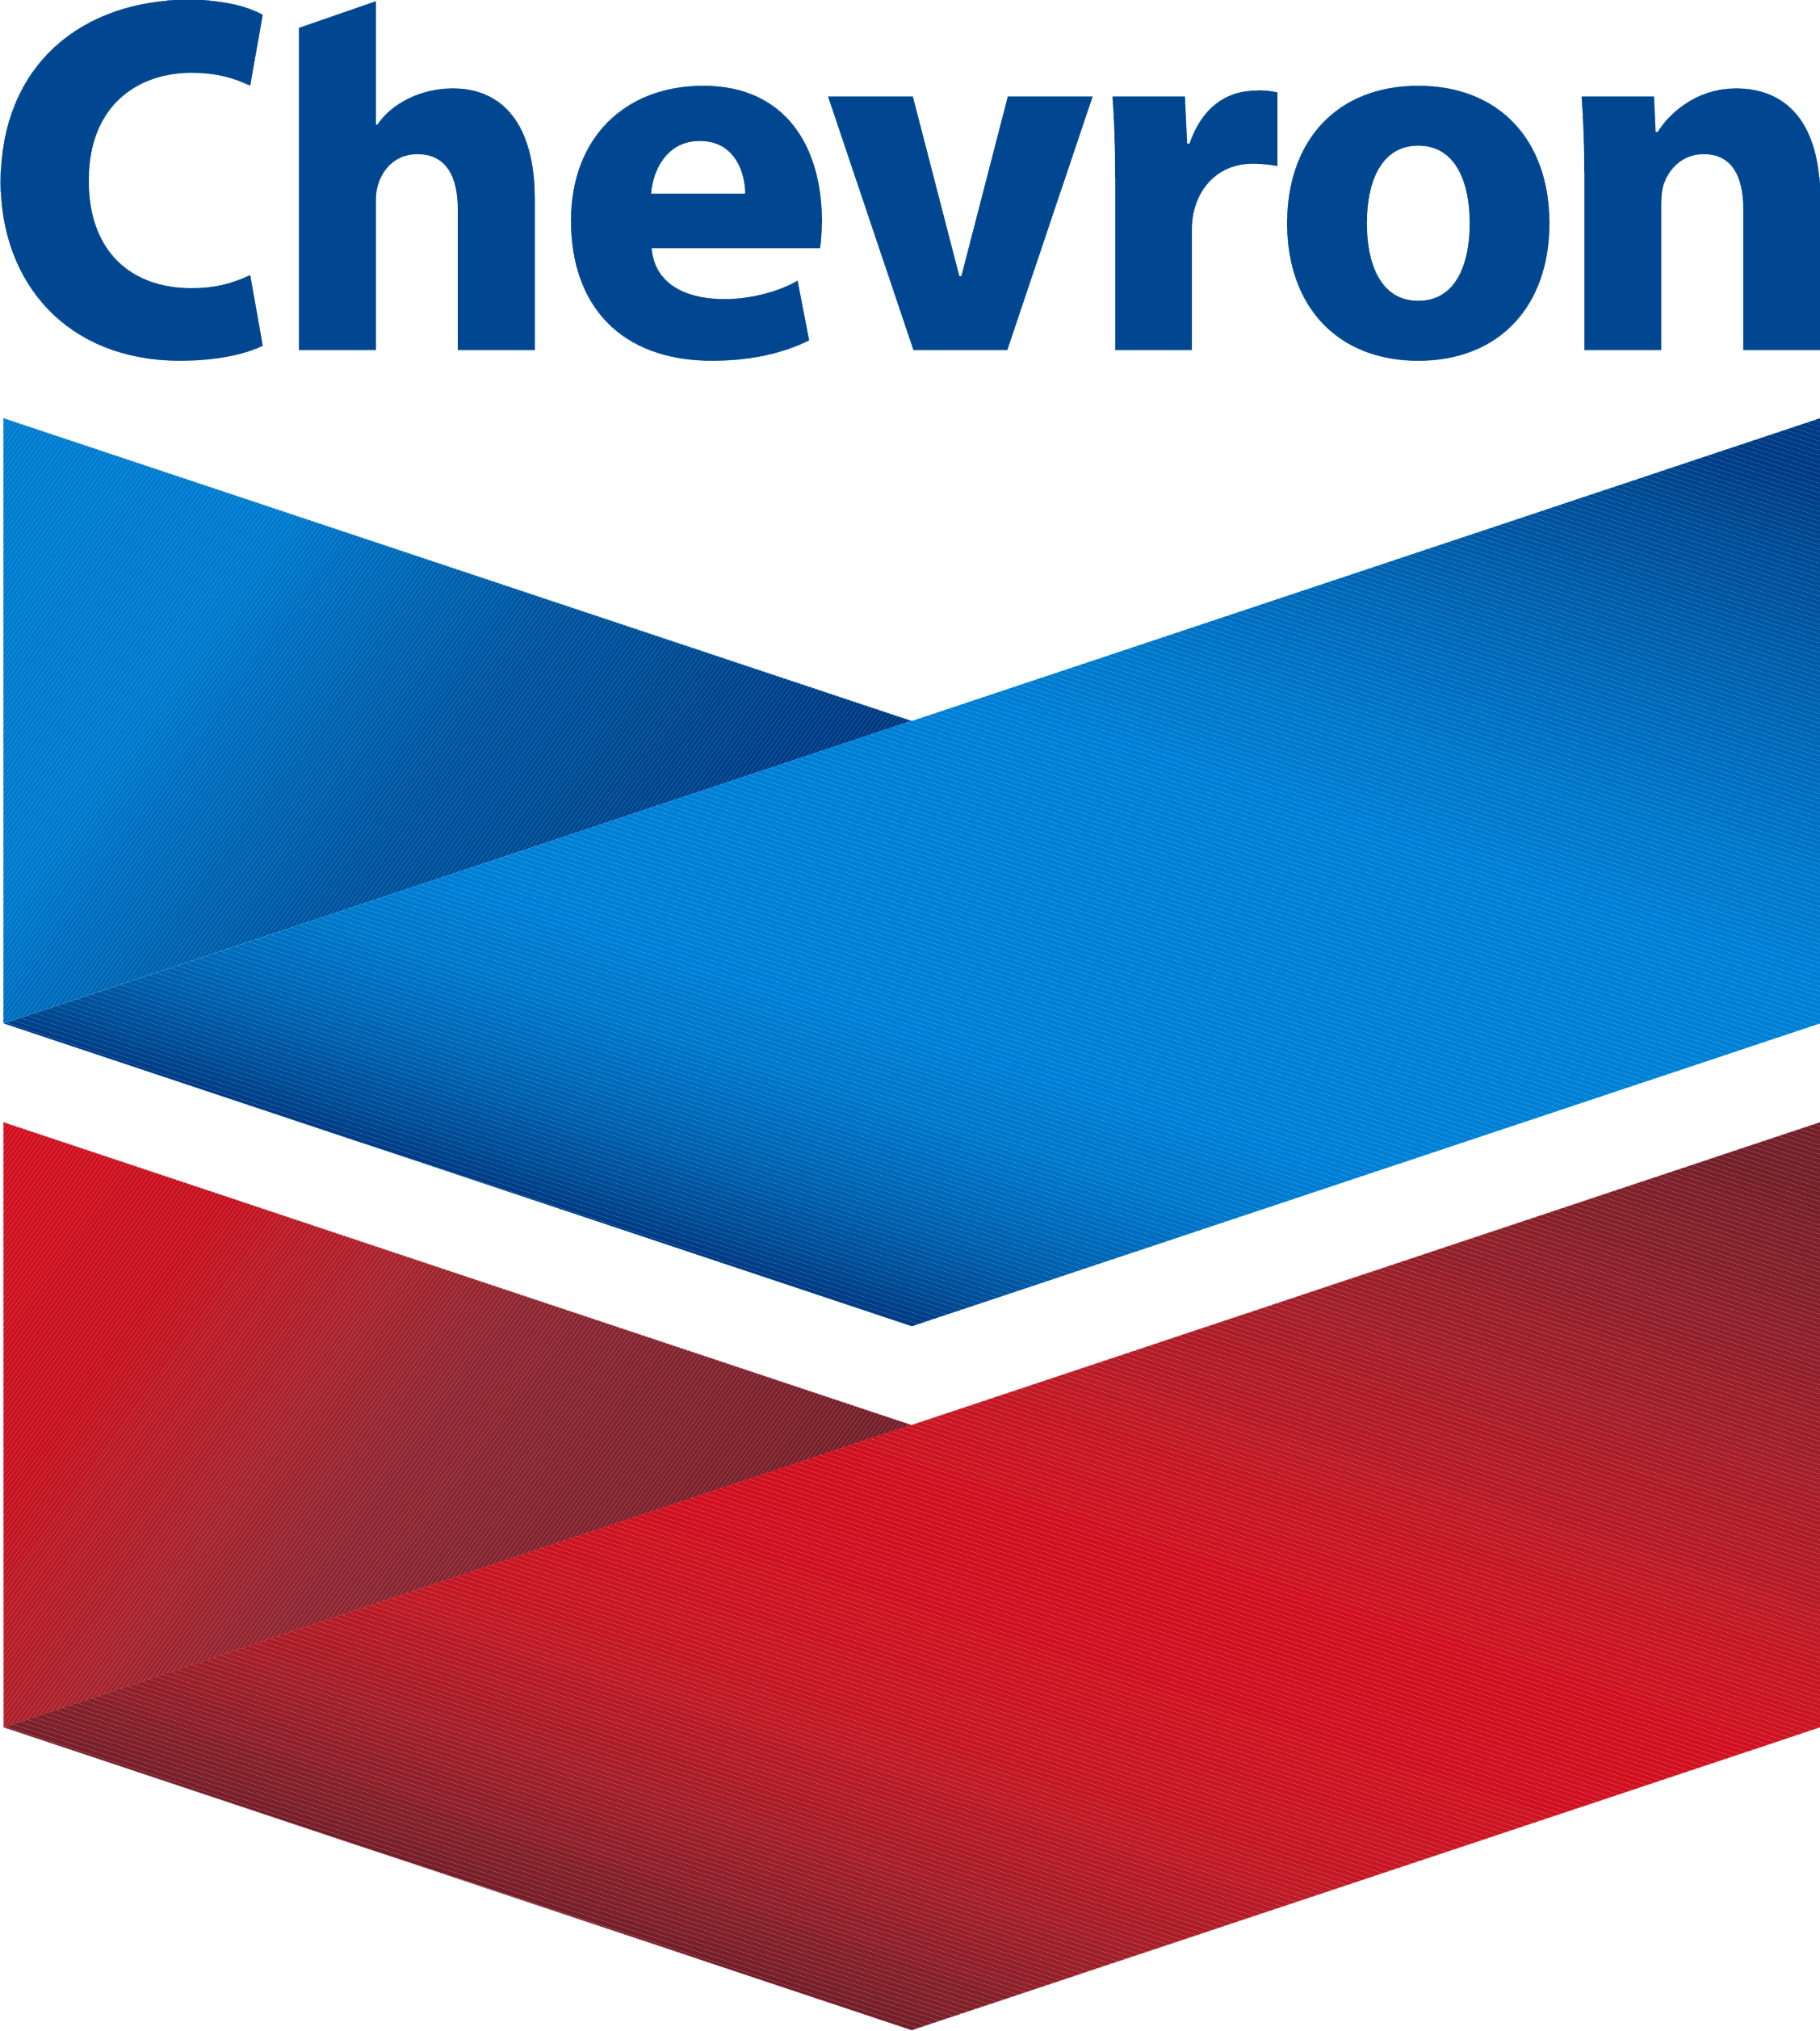 Chevron-logo-.png